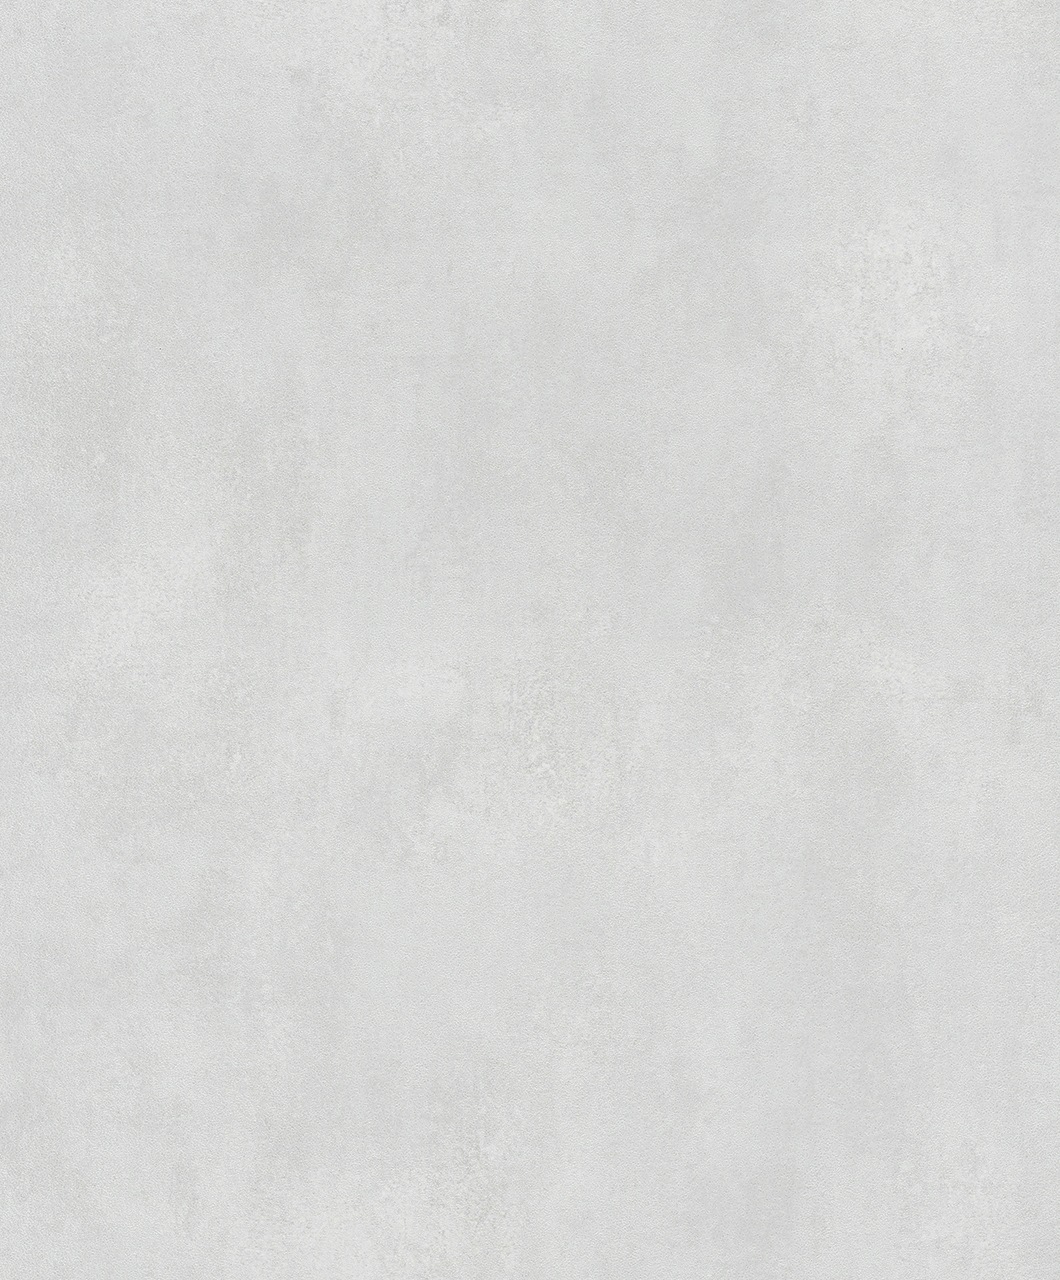 Tapete Braun Uni SCHÖNER WOHNEN-Kollektion Serie Pure für Schlafzimmer, Wohnzimmer oder Küche, Made in Germany Premium Qualität 10,05x0,53m